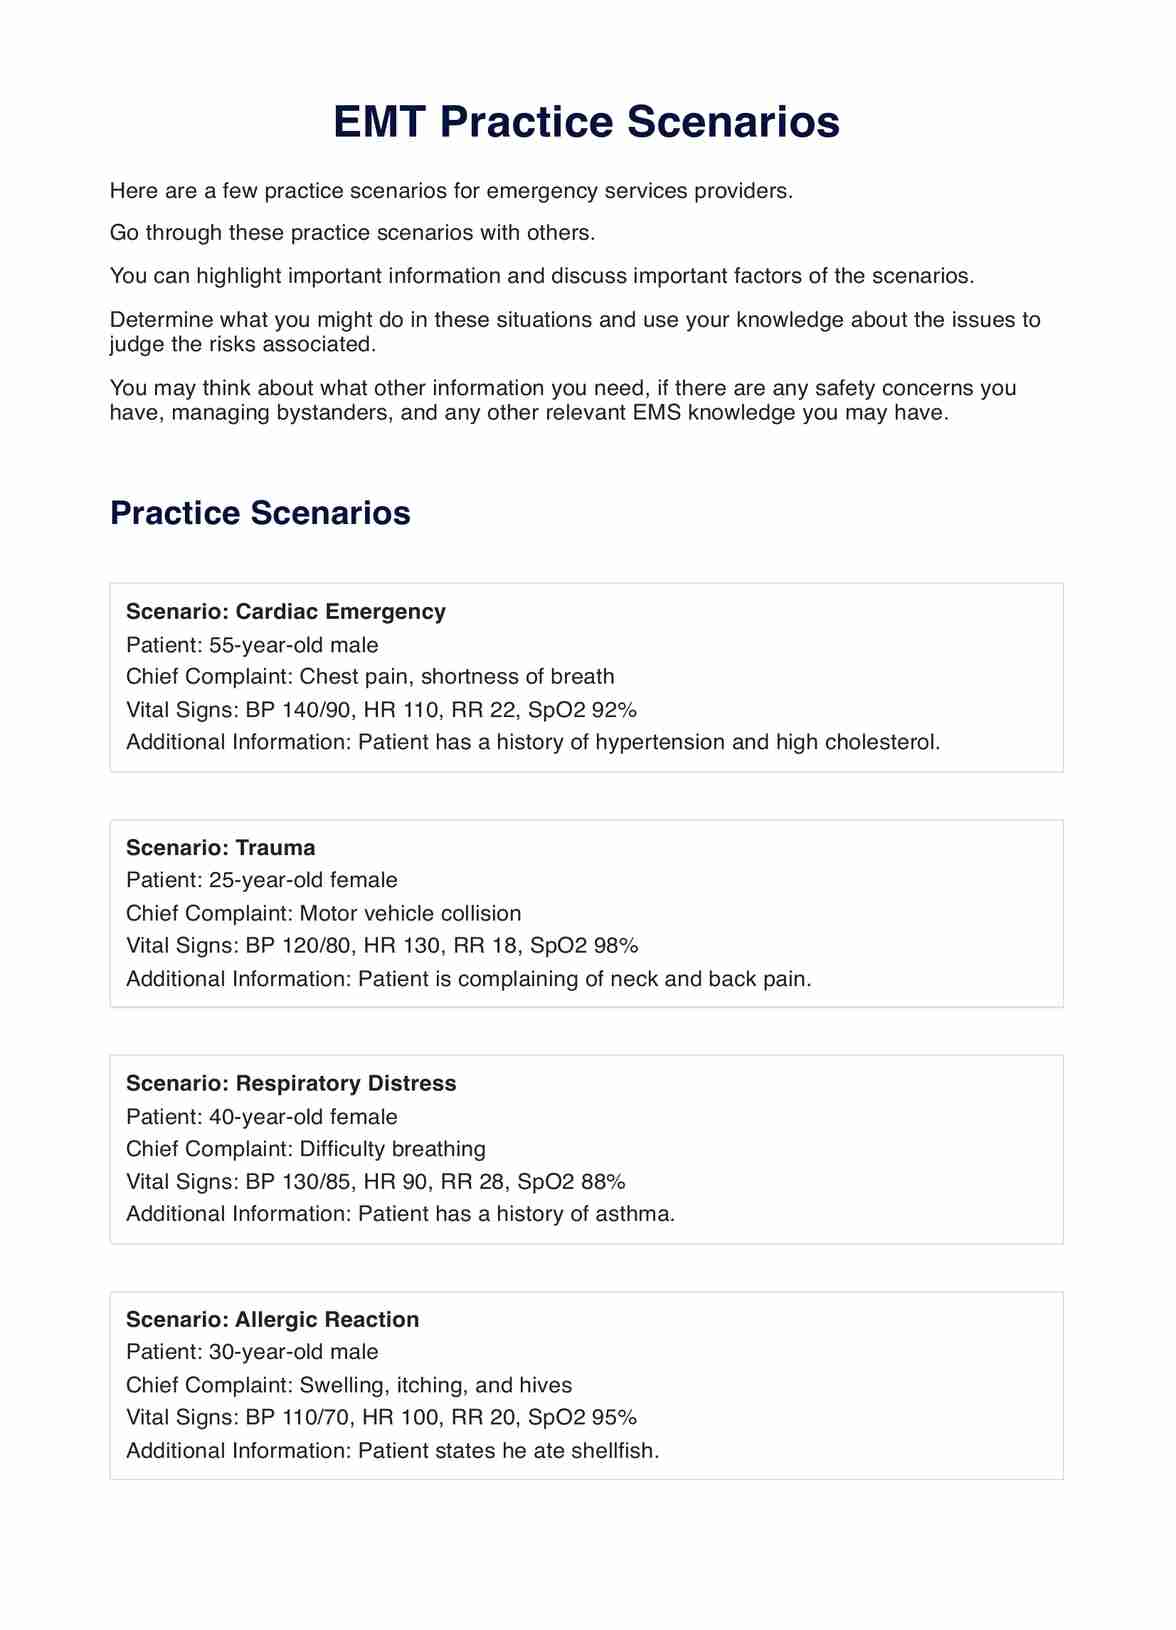 EMT Practice Scenarios PDF Example